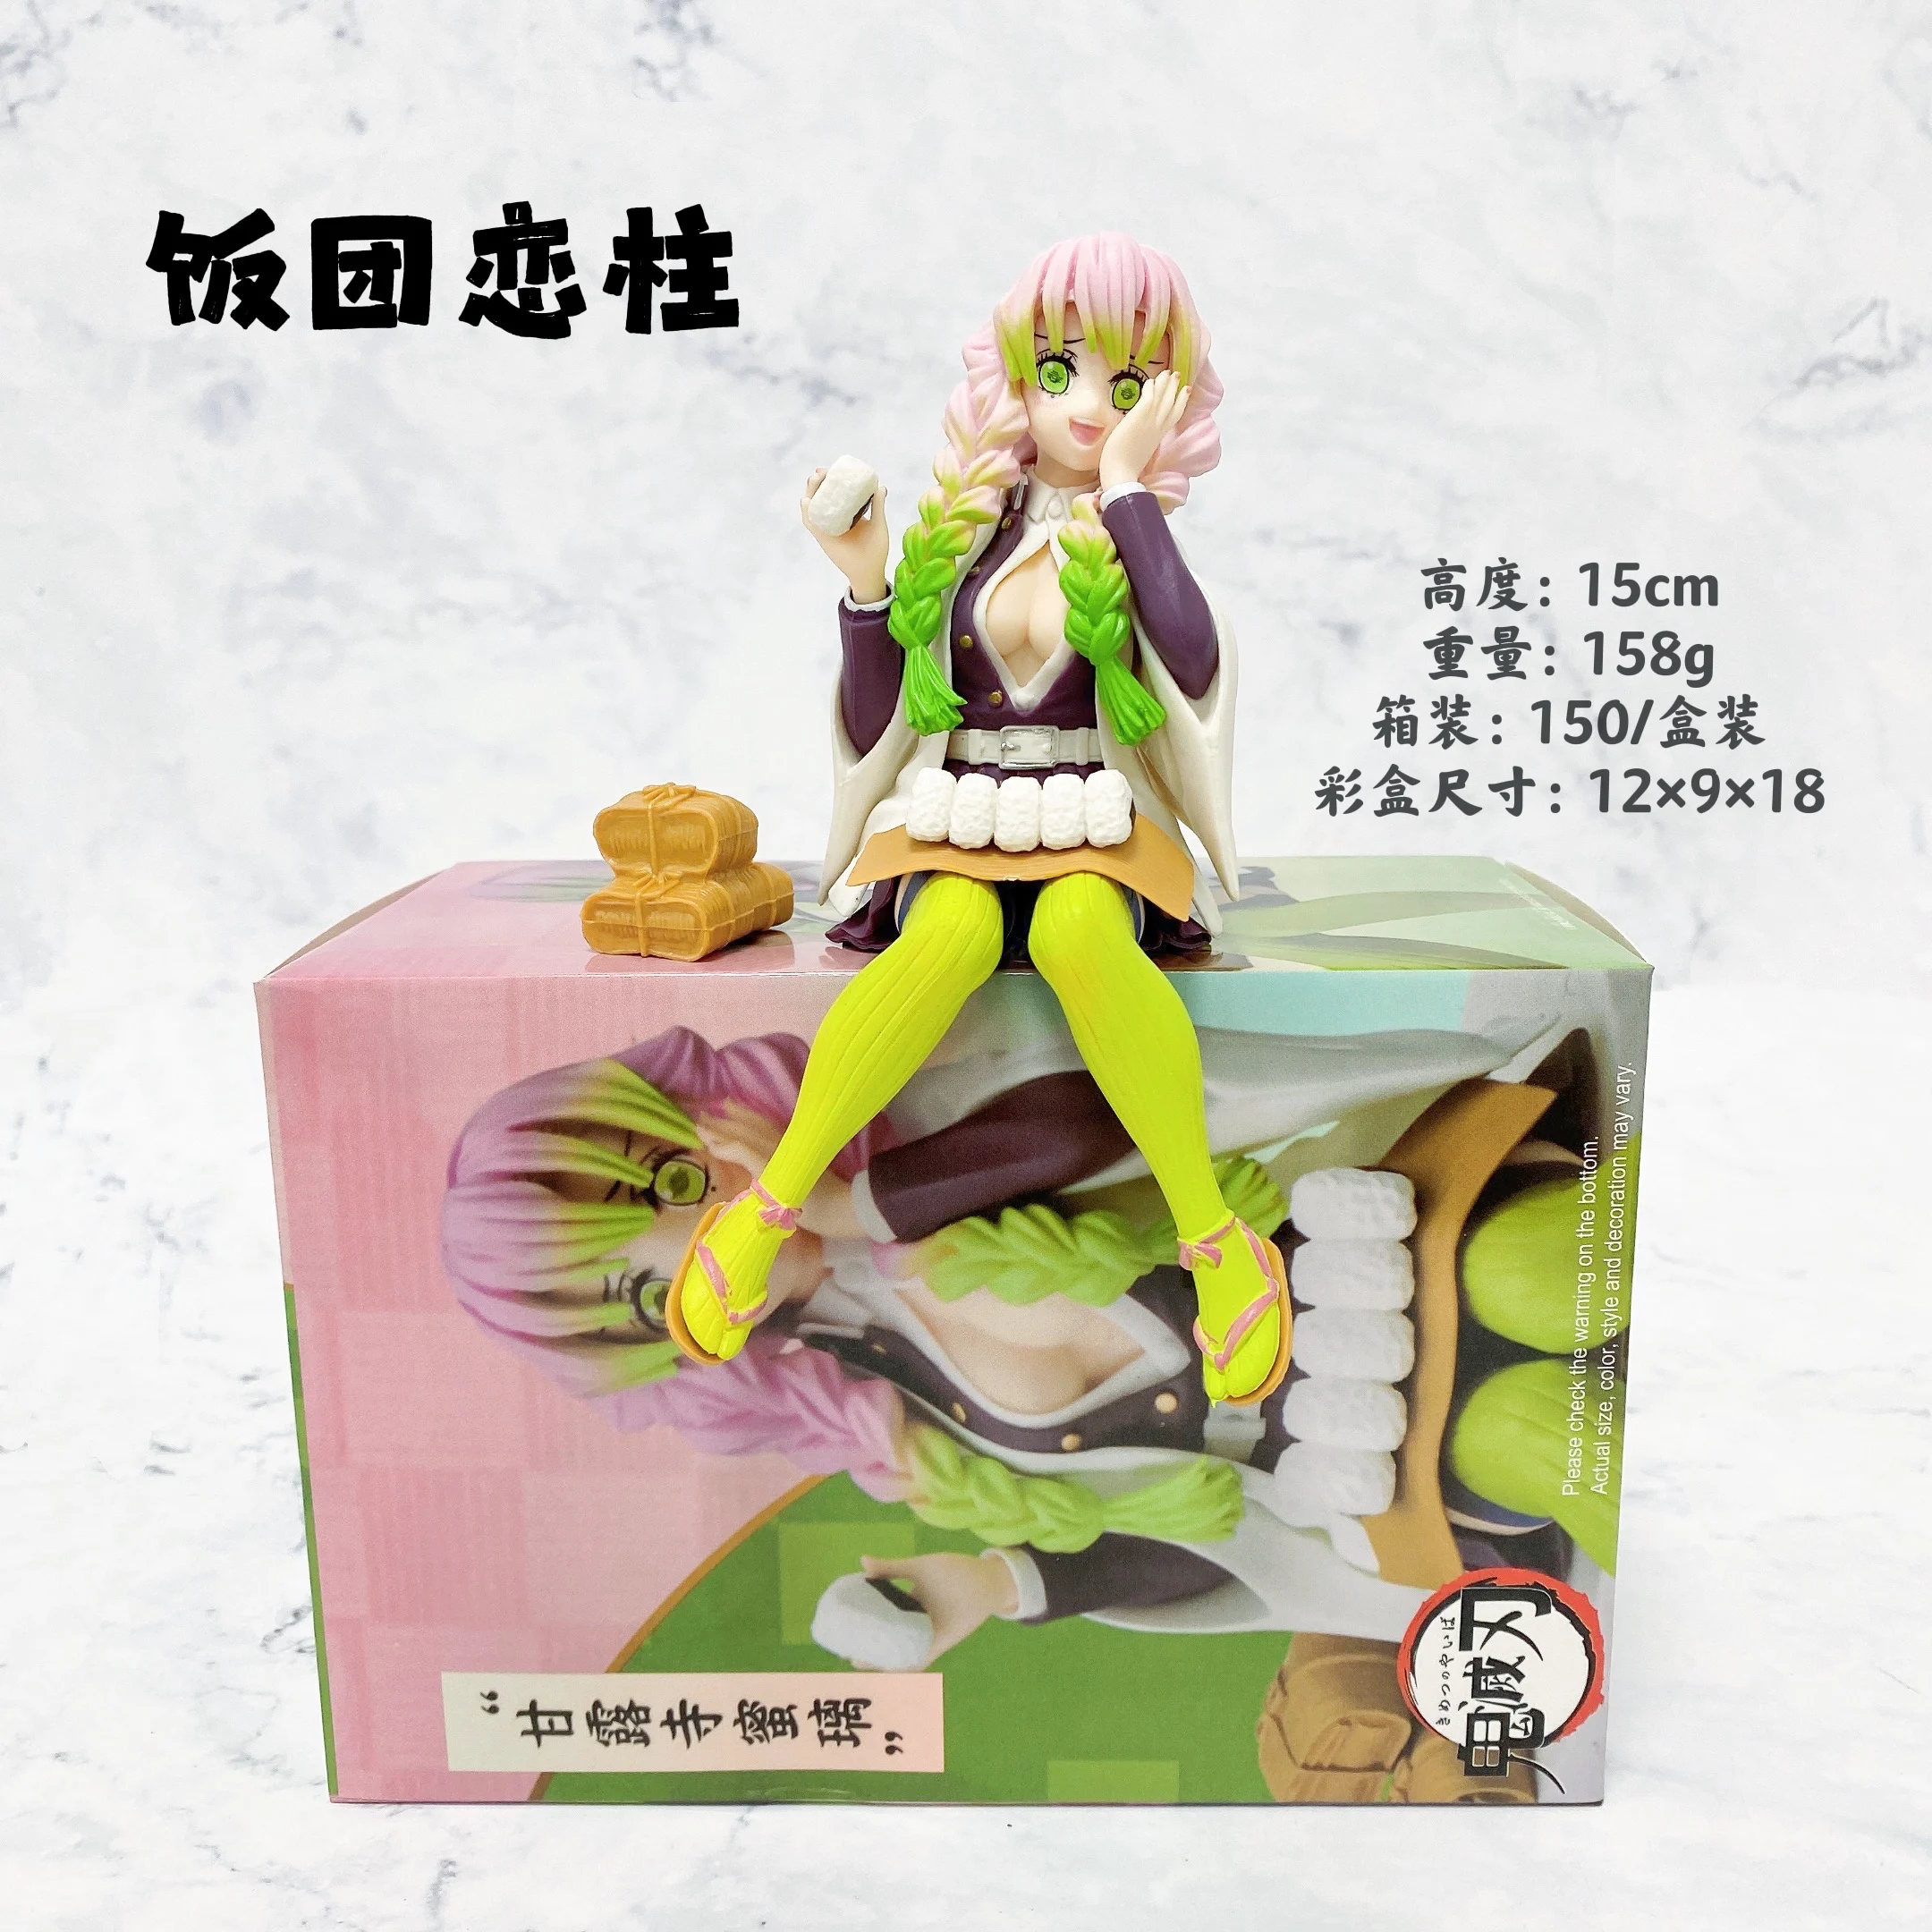 Japanese Anime Demon Slayer Kimets No Yaiba Pvc Sitting Action Figure Toy -  Buy Japanese Anime Demon Slayer Kimets No Yaiba Pvc Sitting Action Figure  Toy Product on